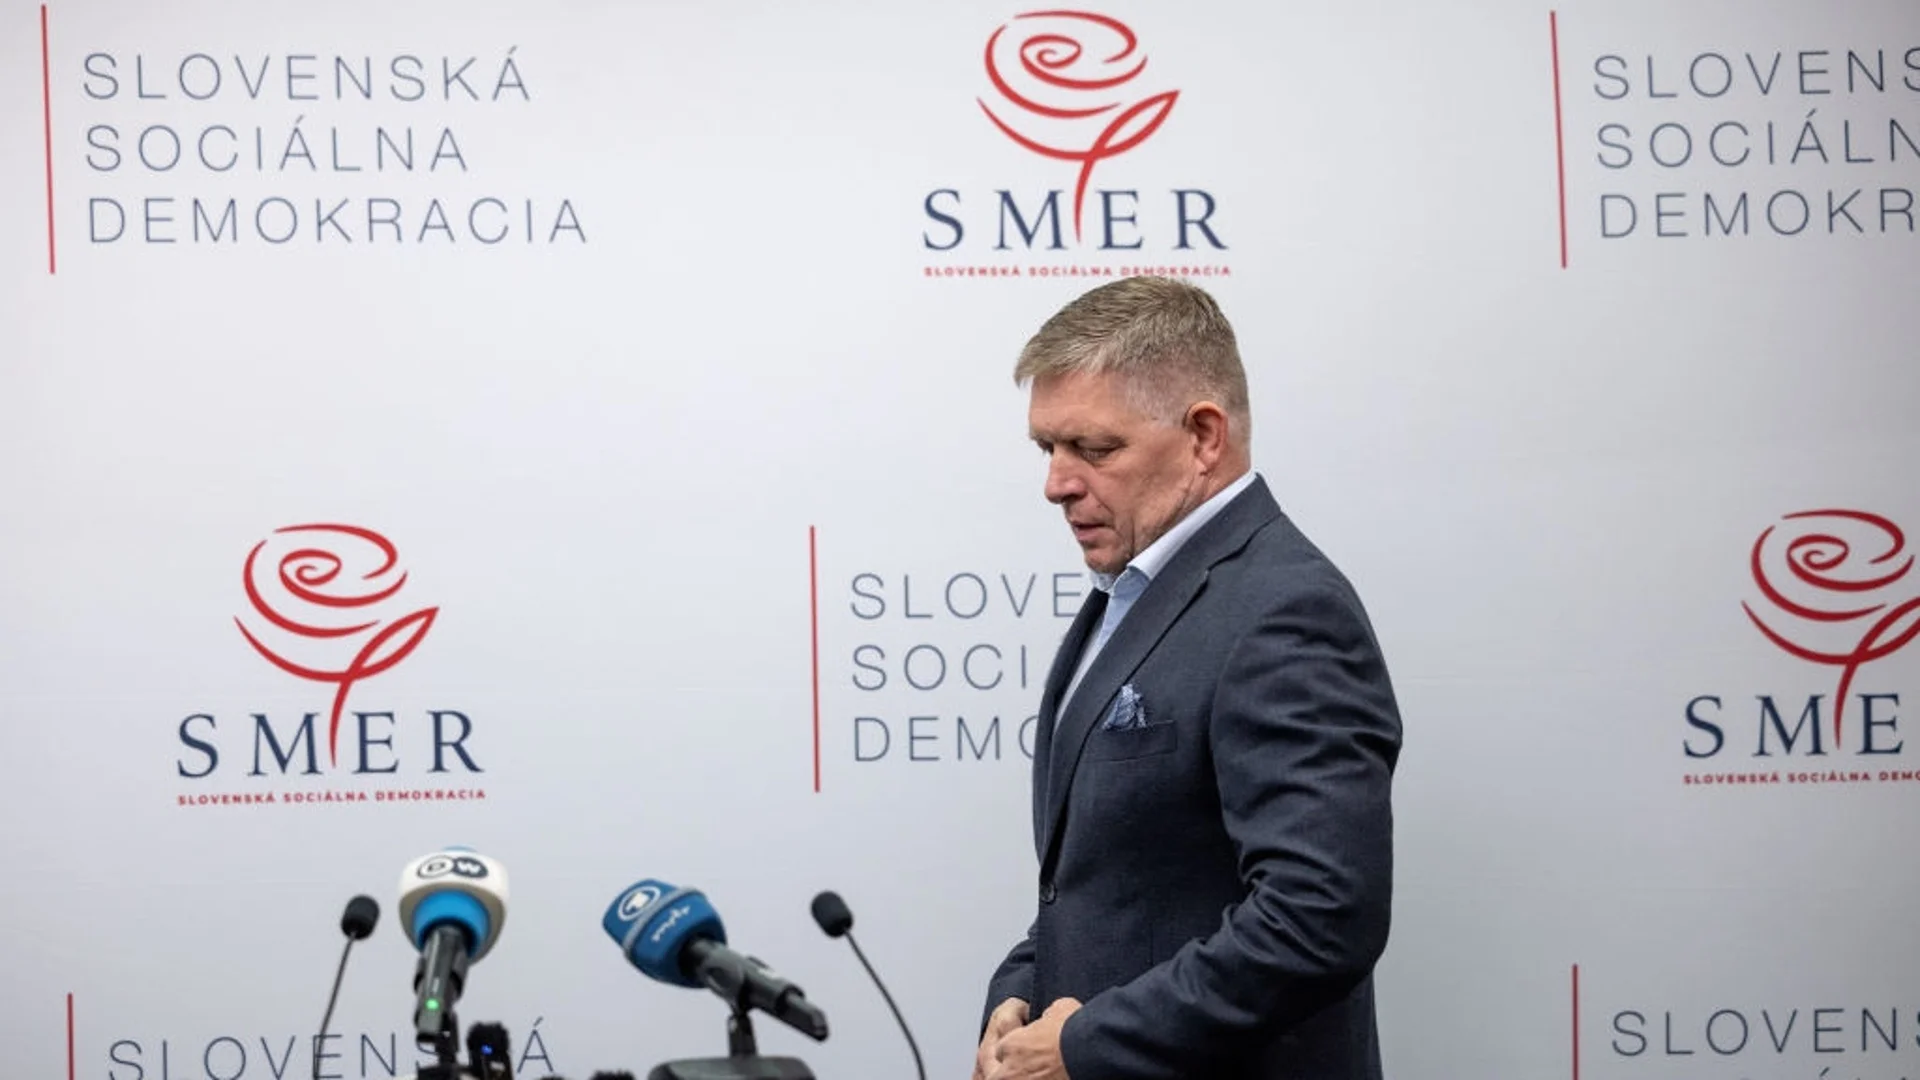 Словашкият конституционен съд спря част от спорните реформи на Фицо, но не и една от ключовите